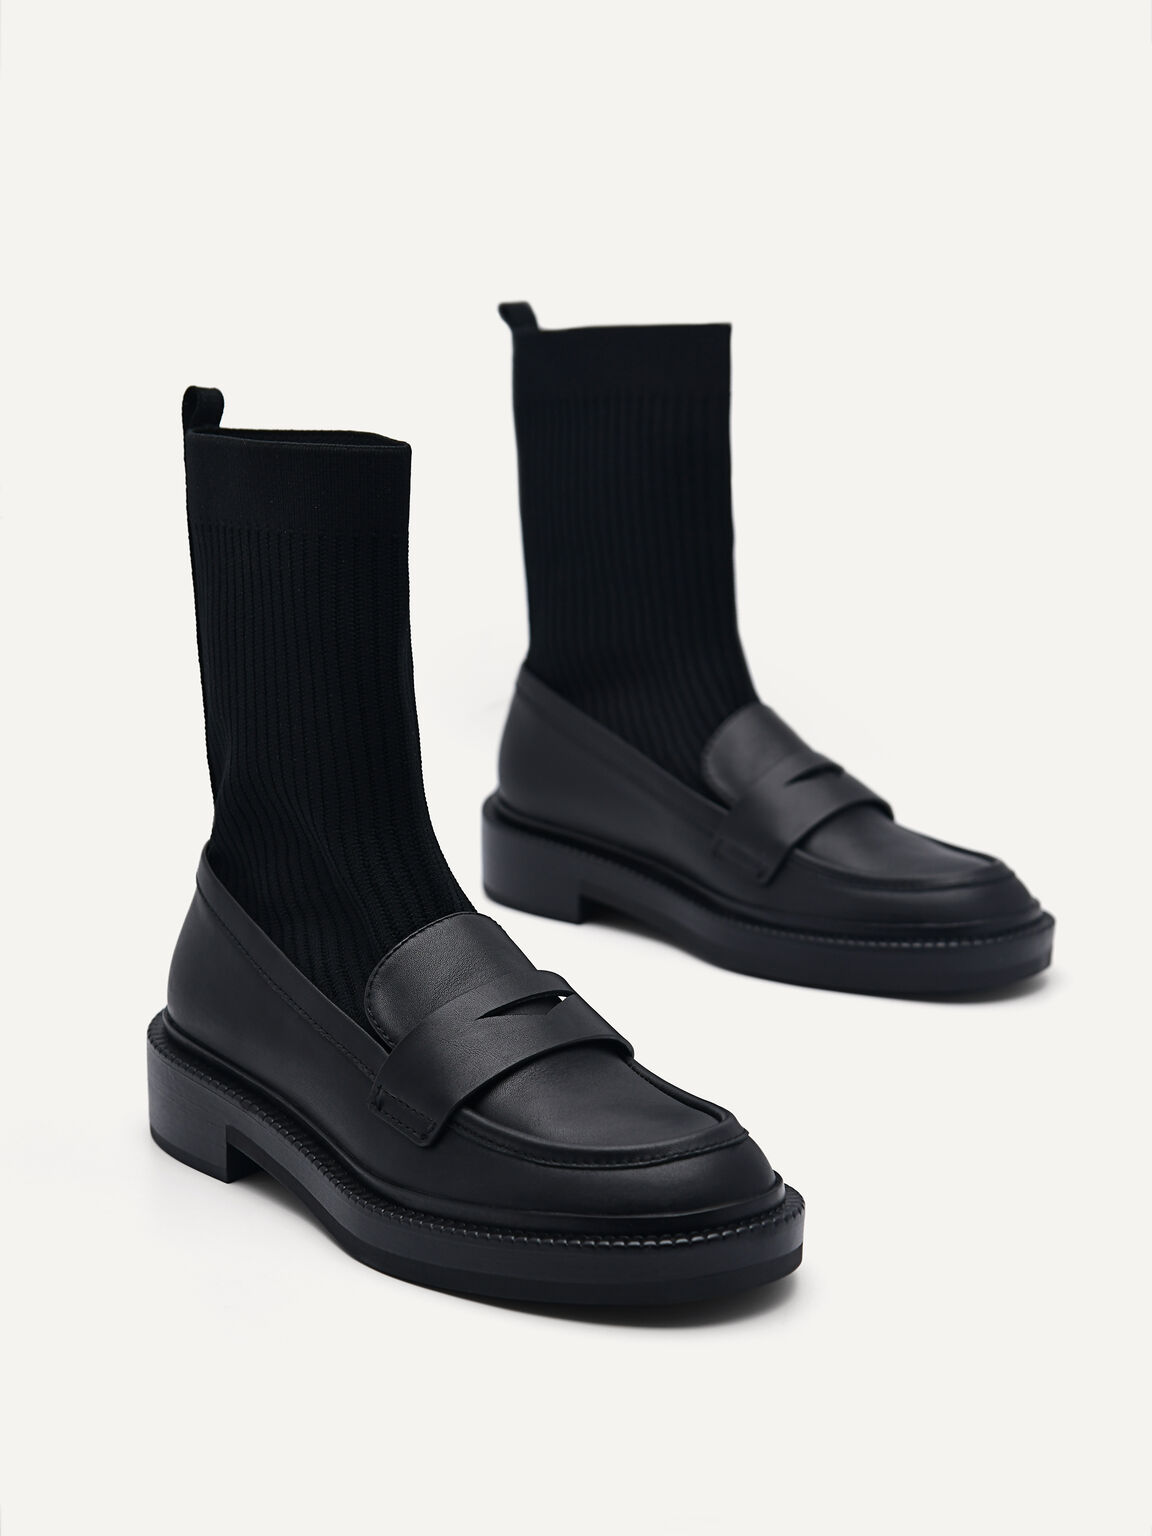 Gropius Boots, Black